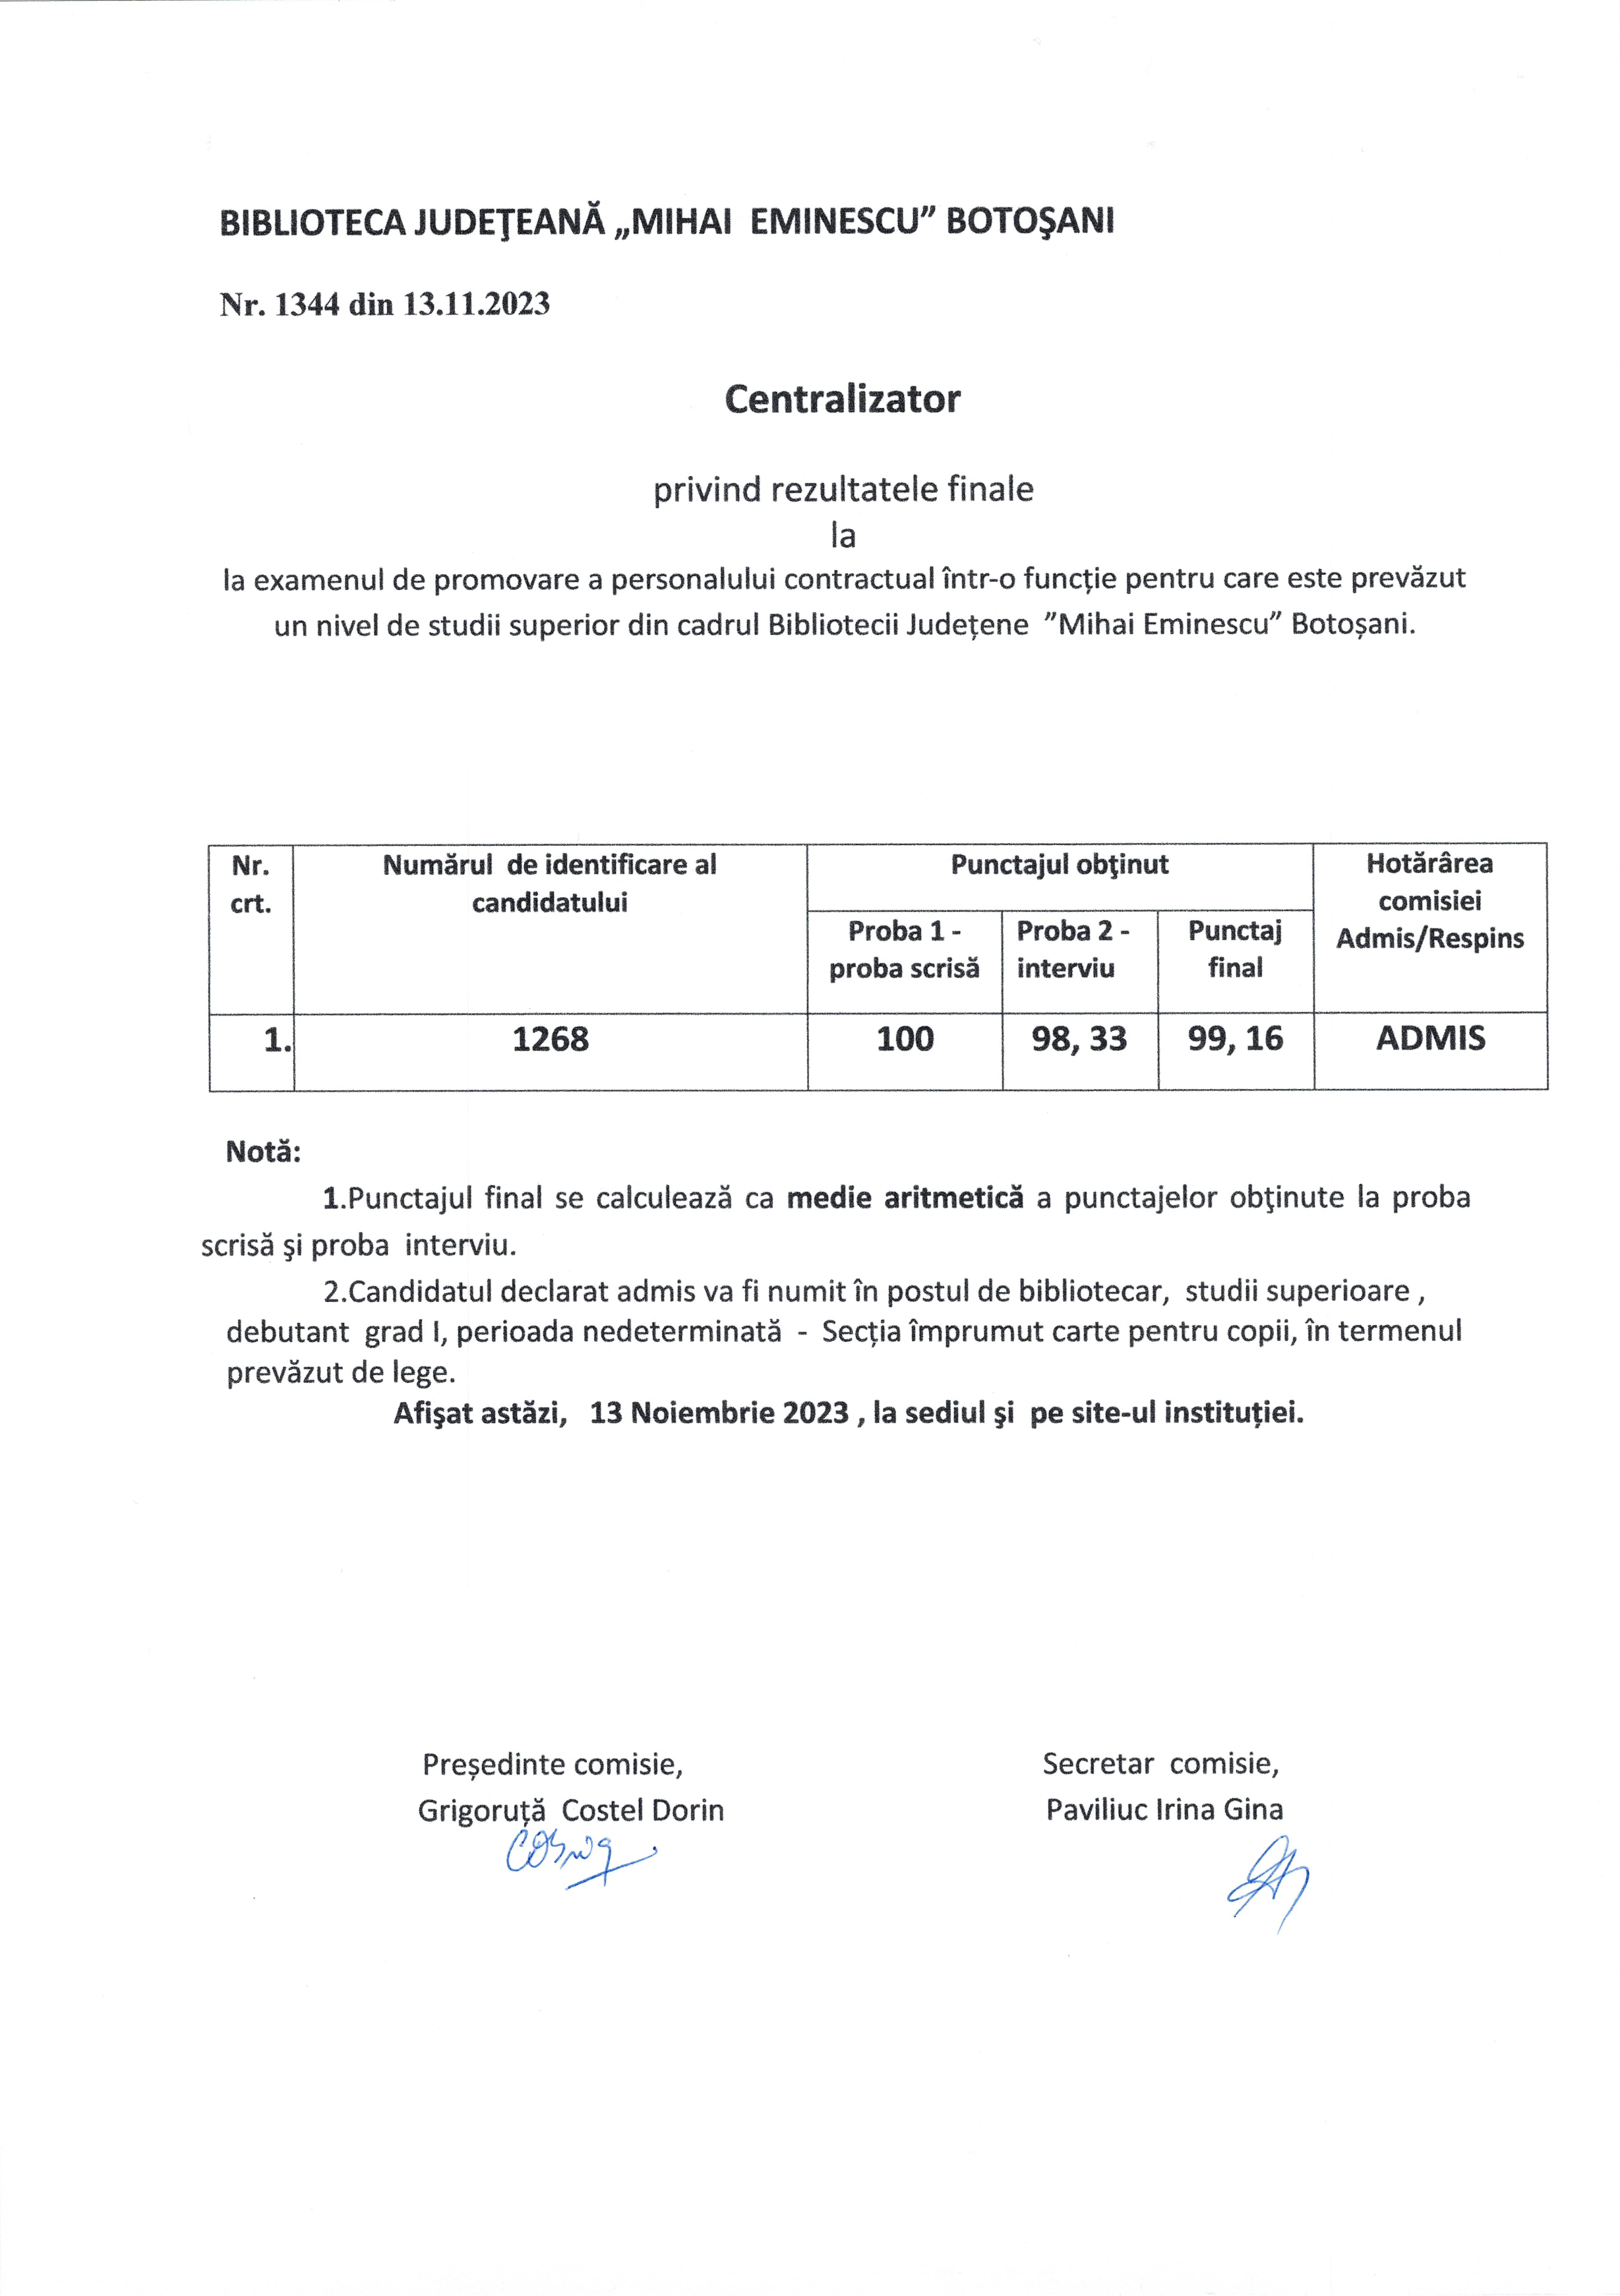 Examen de promovare a personalului contractual - Rezultate finale